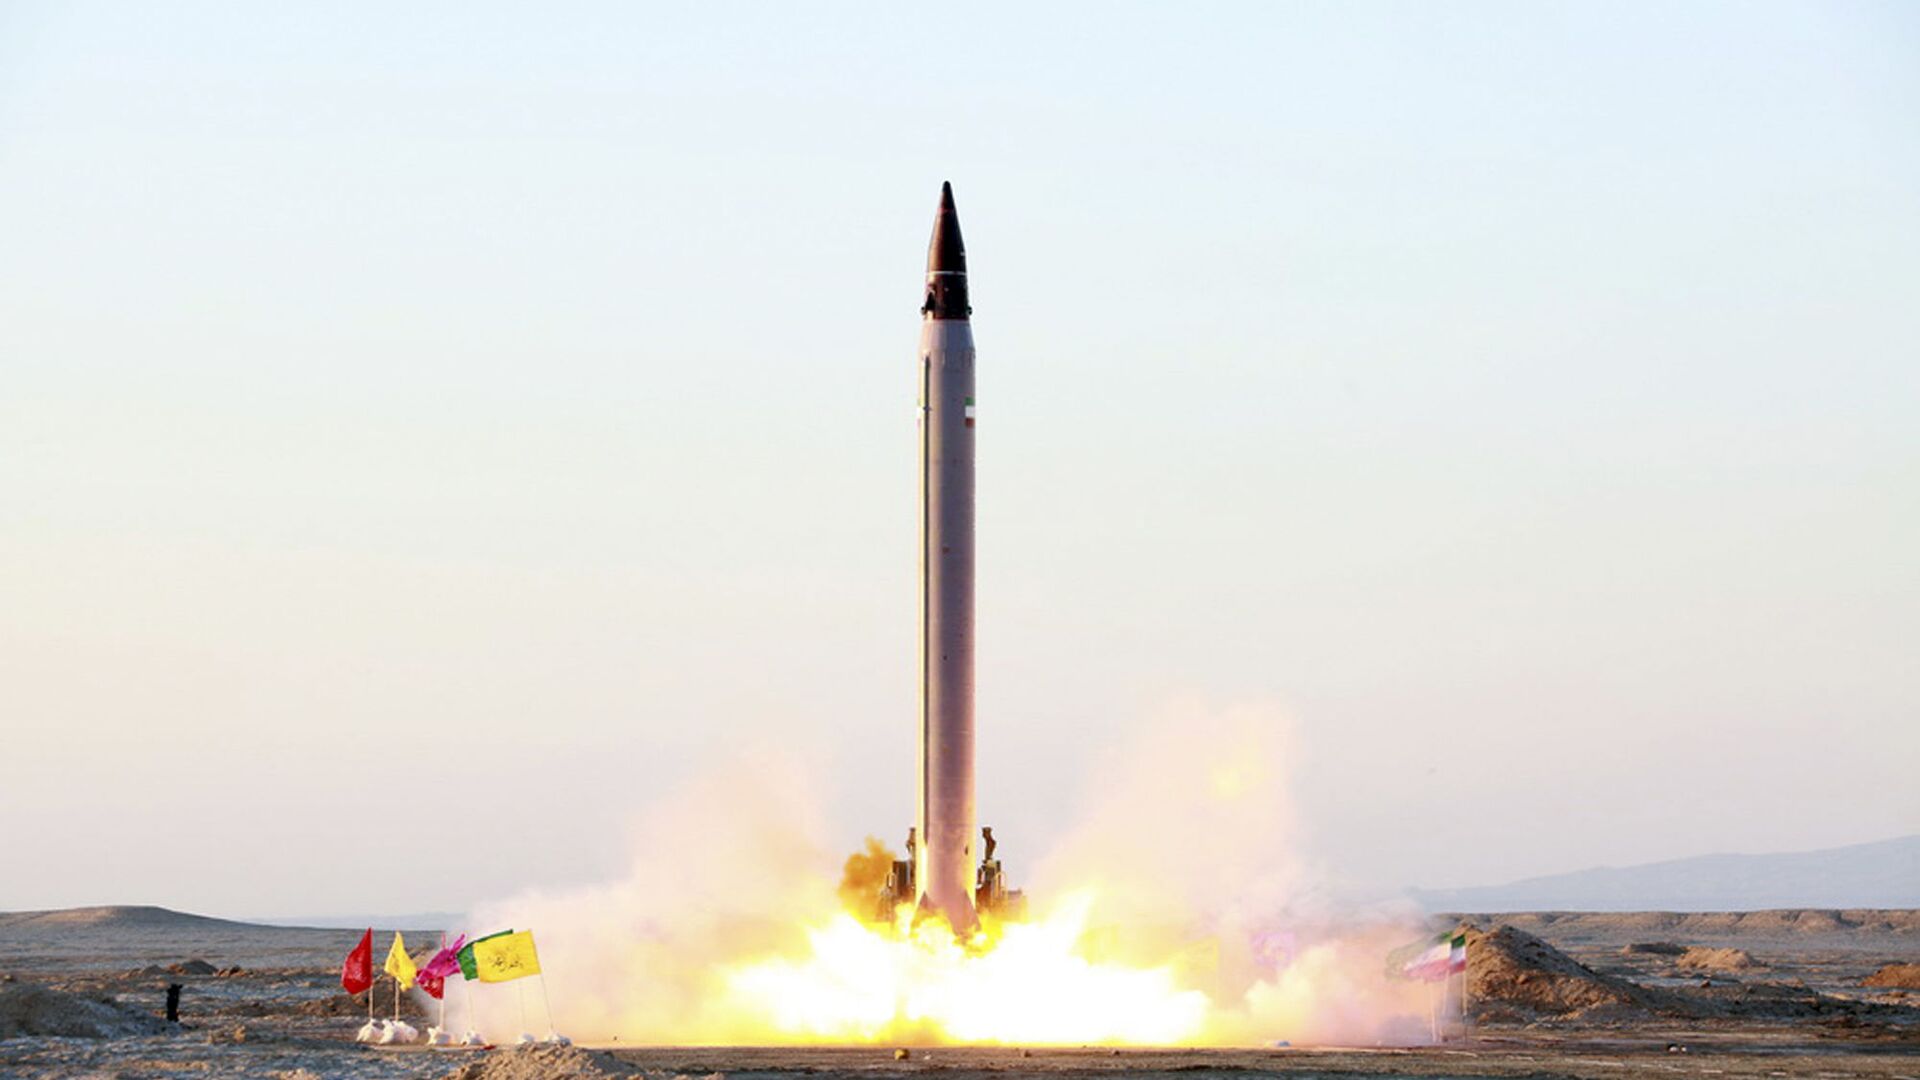 الحرس الثوري: لم يعد بإمكان القبة الحديدية والدرع الصاروخي مواجهة صواريخنا أبدا - 05.01.2022, سبوتنيك عربي